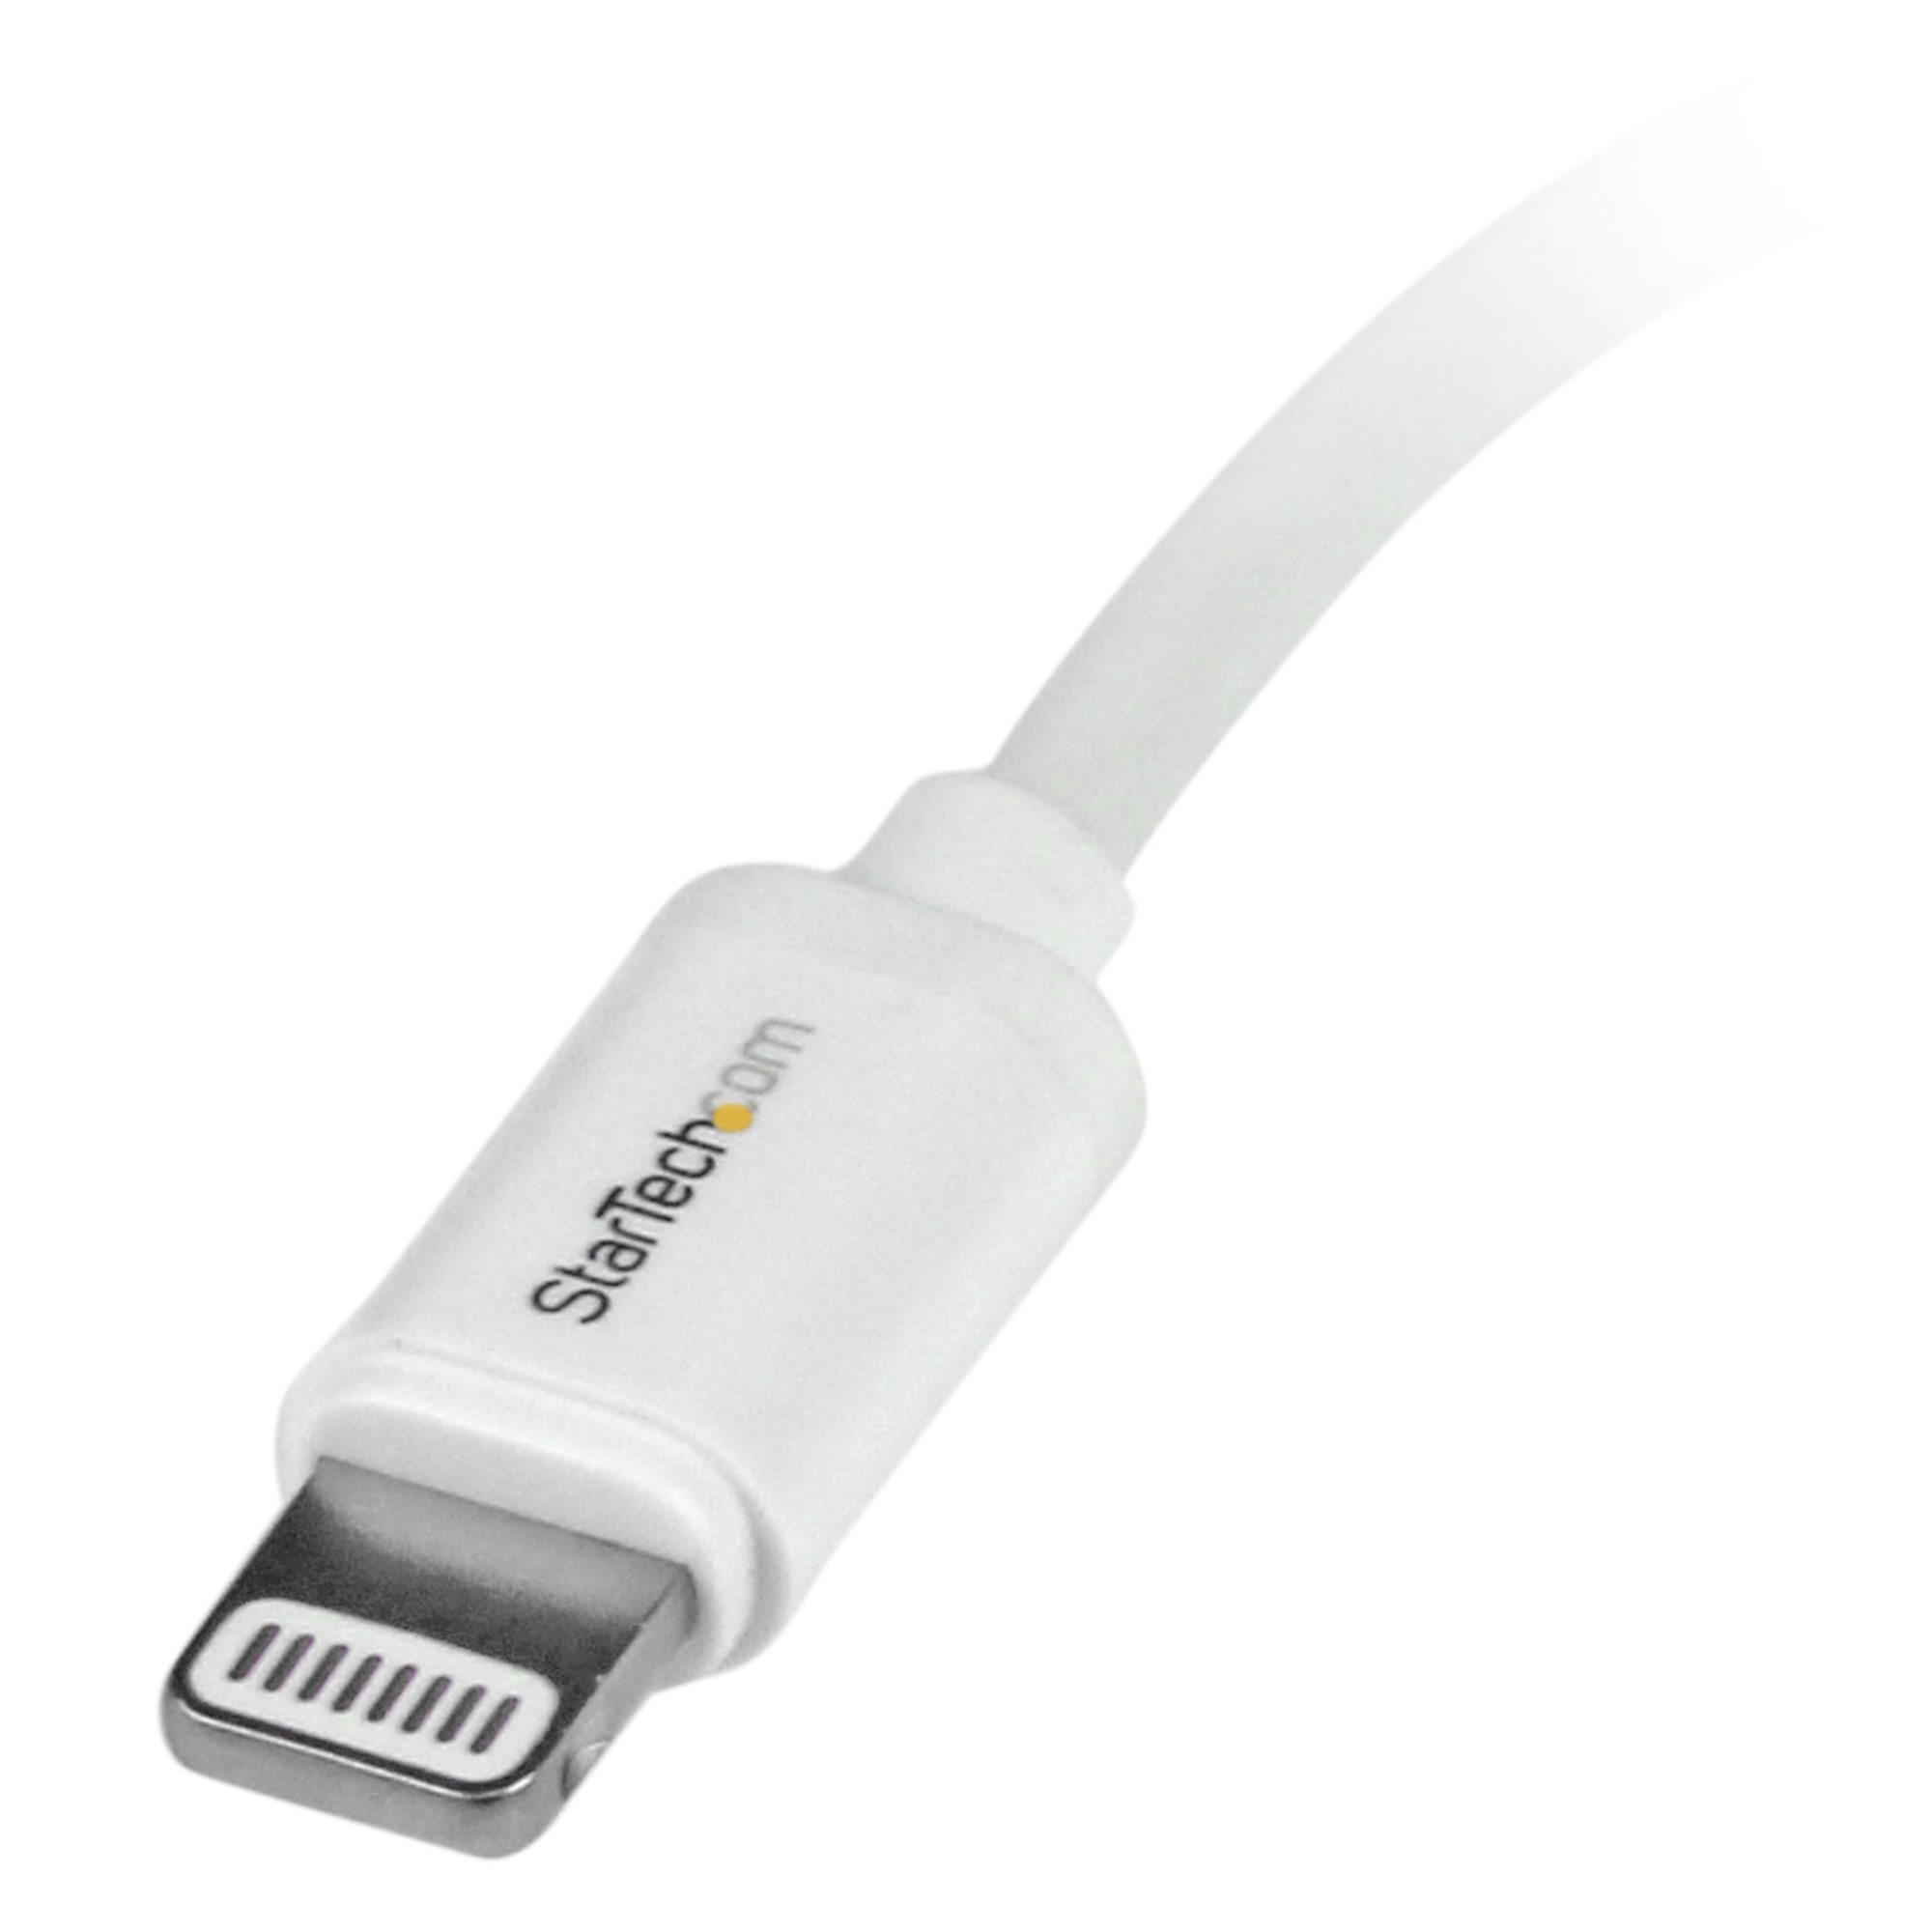 StarTech.com Câble USB vers Lightning de 50cm - Certifié Mfi - Adaptateur USB  Lightning Noir, Gaine durable en TPE - Cordon Chargeur Iphone/Lightning  Spiralé en Fibre Aramide - Câble USB pour Iphone